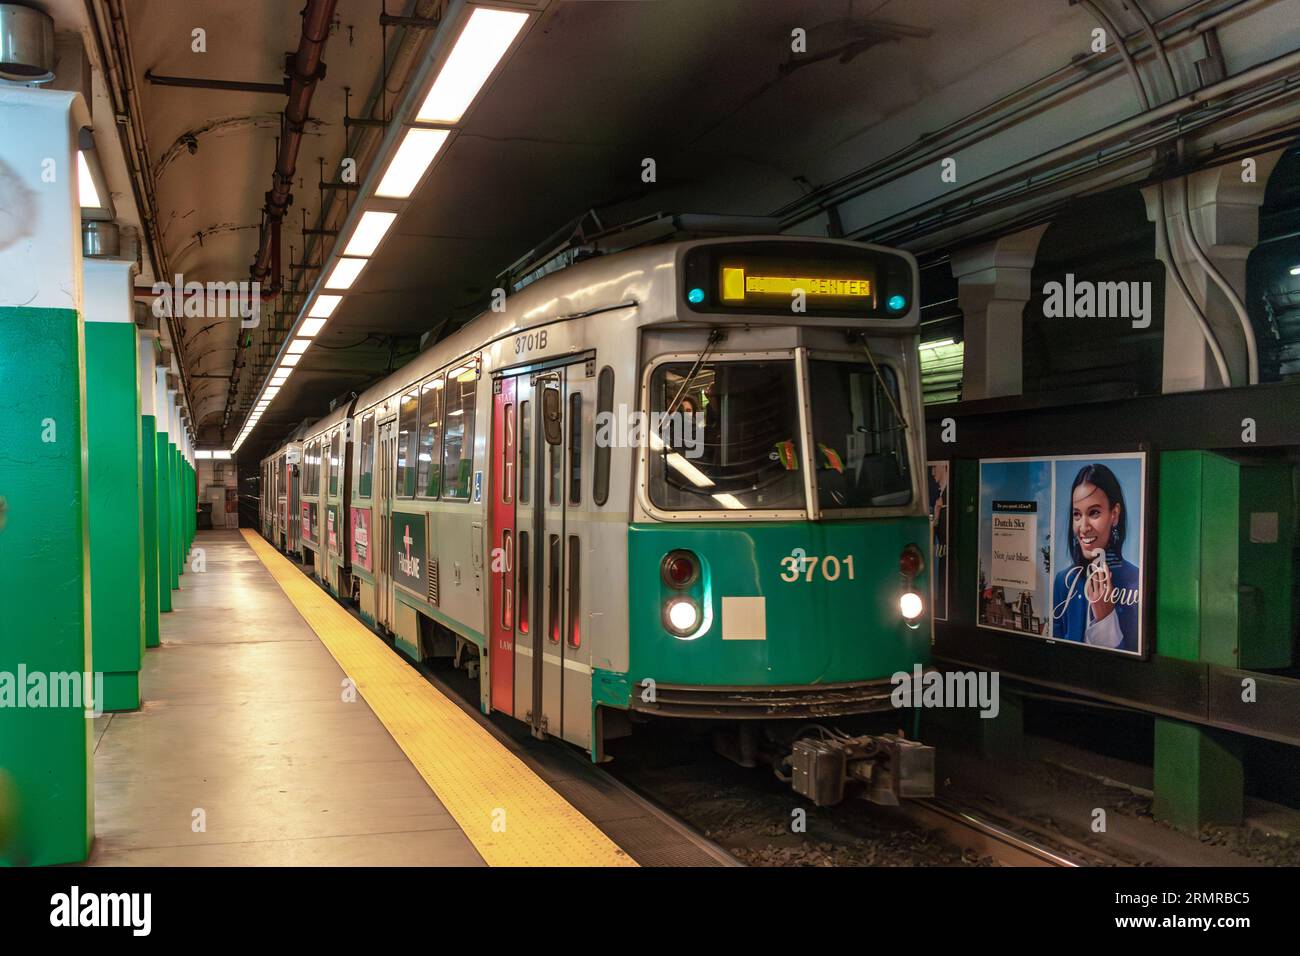 Un tramway de métro Boston MBTA 'T Line' no. 3701 sur la ligne verte se termine dans une station calme Banque D'Images